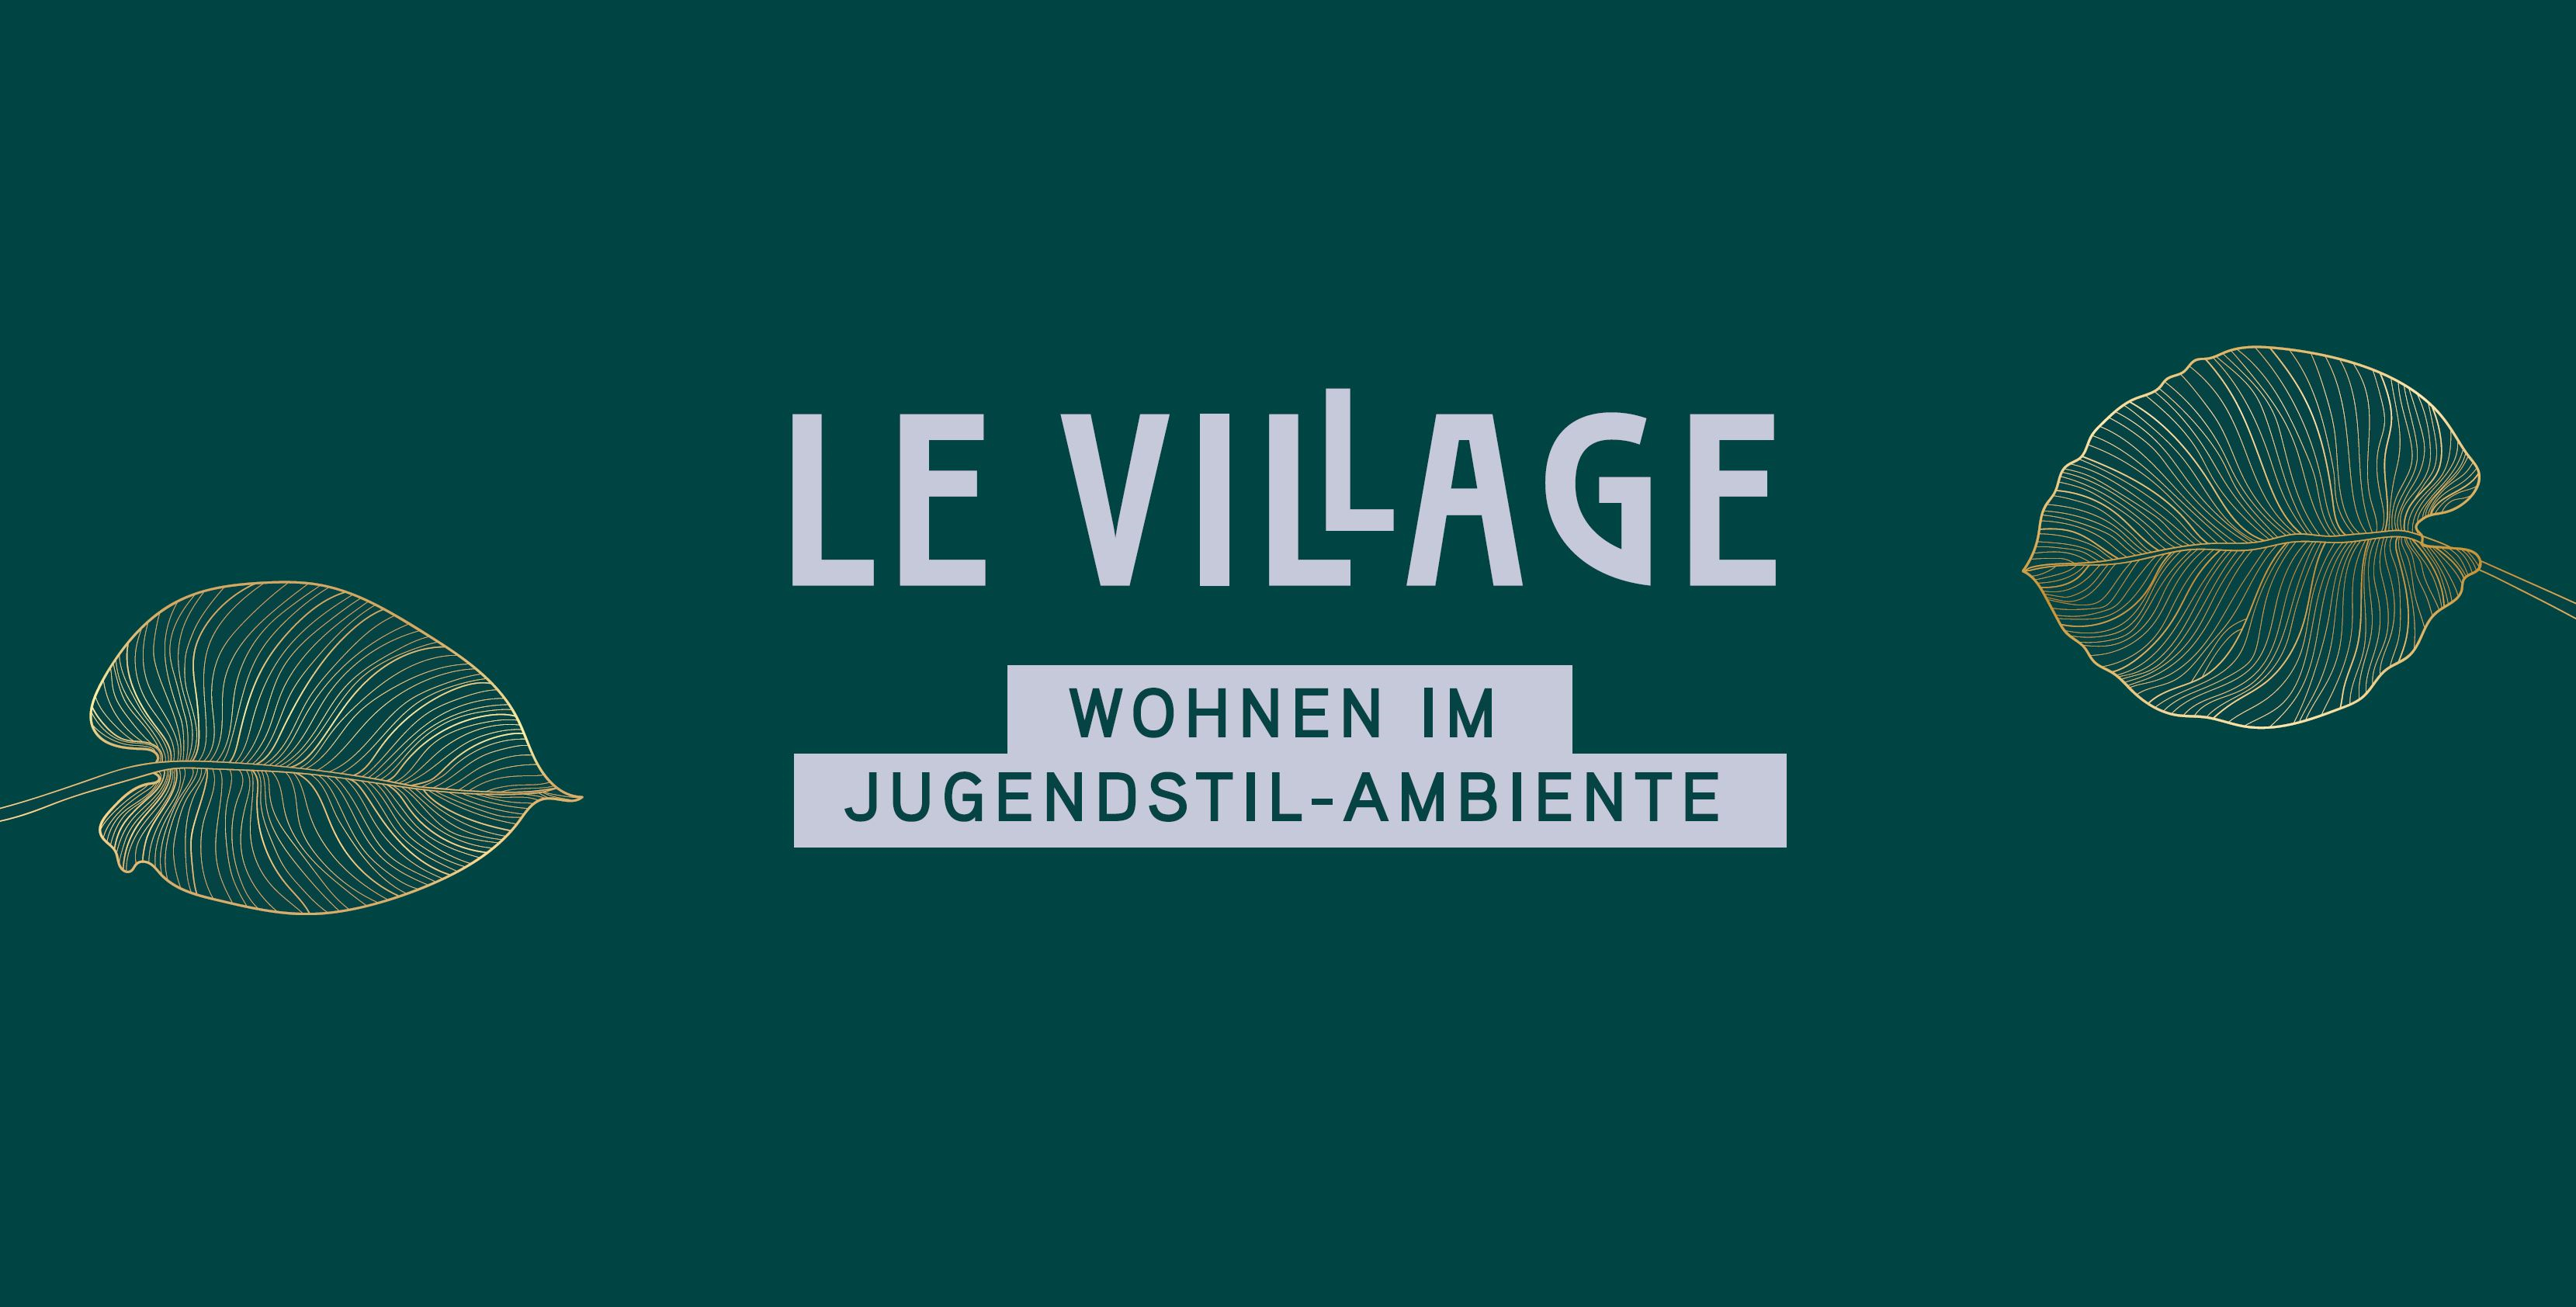 202303_Le Village Banner